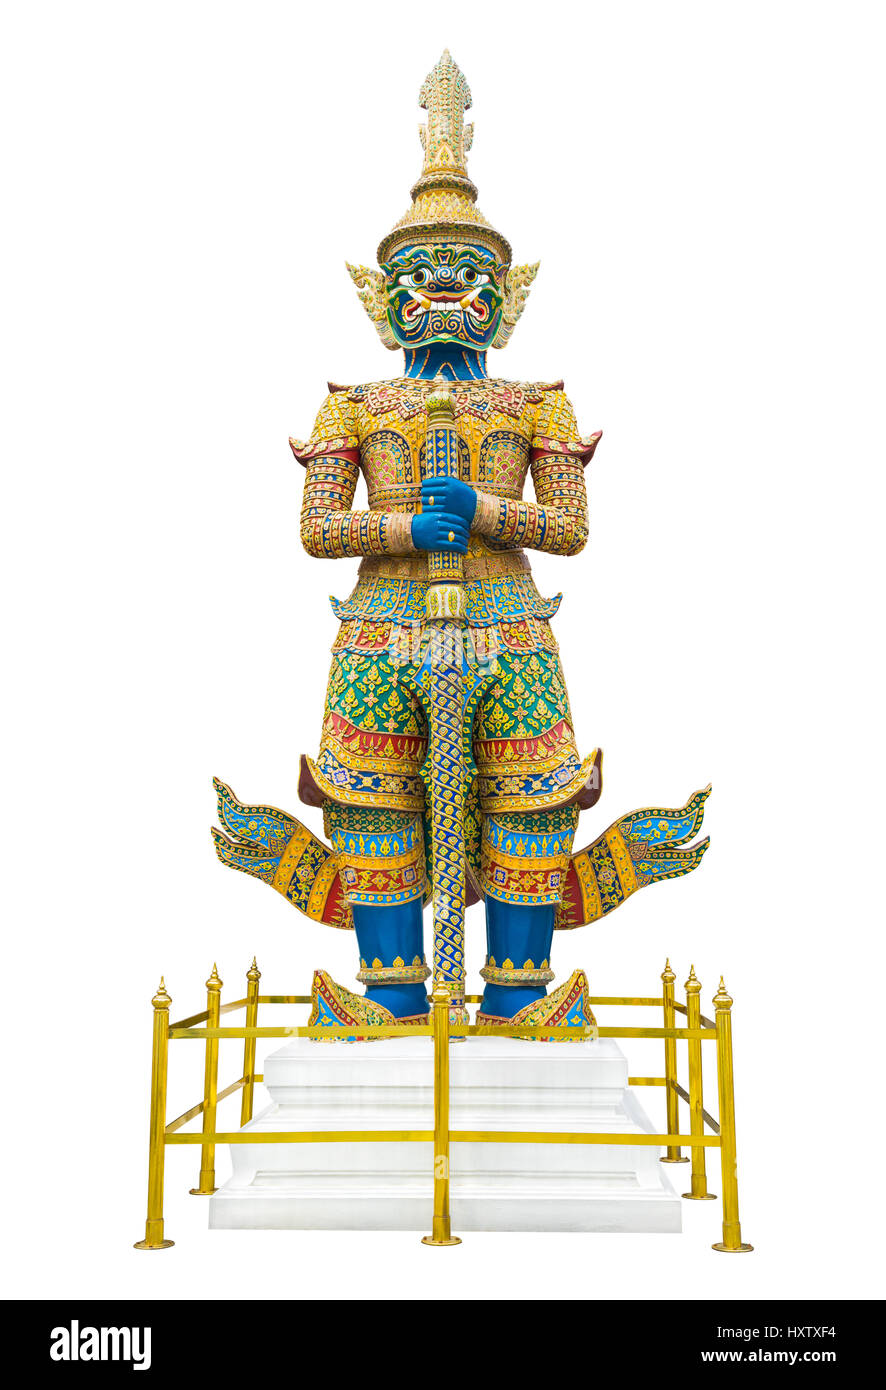 Riesige Wächter Statue im Wat Phra Kaew Grand Palace Bangkok isoliert auf weißem Hintergrund Stockfoto